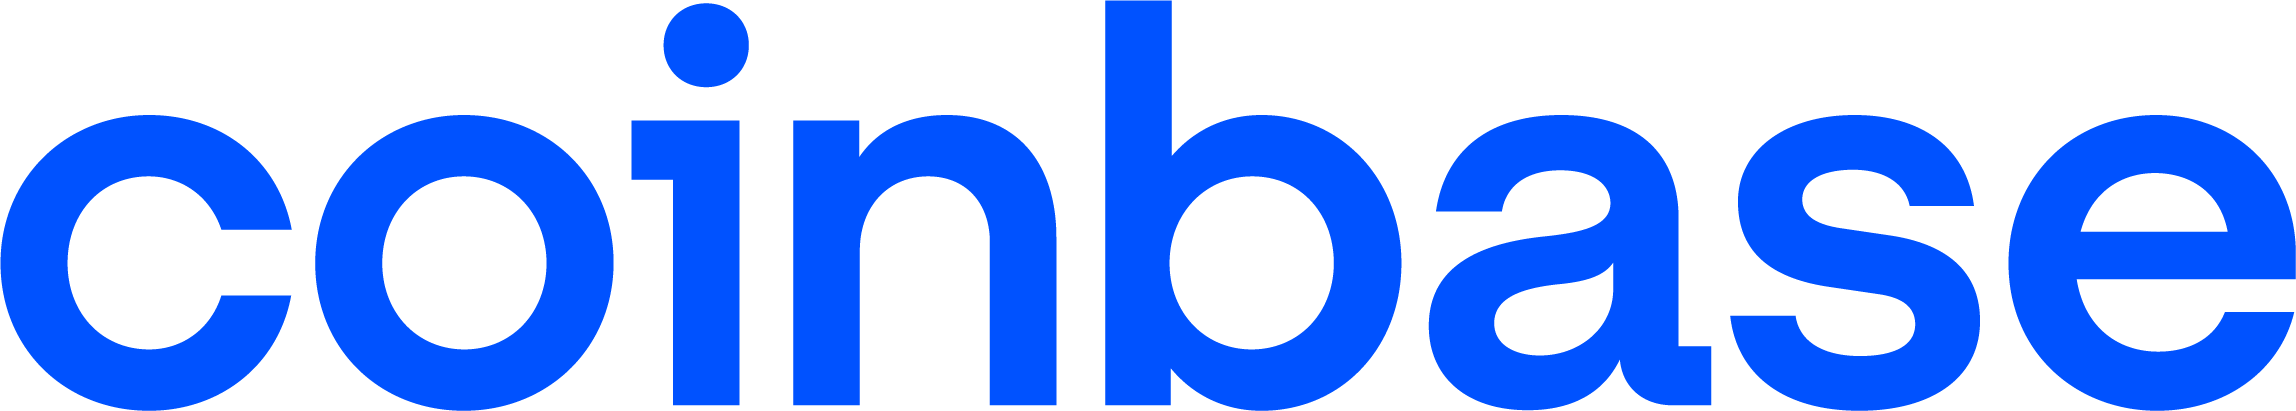 
            Coinbase-logo